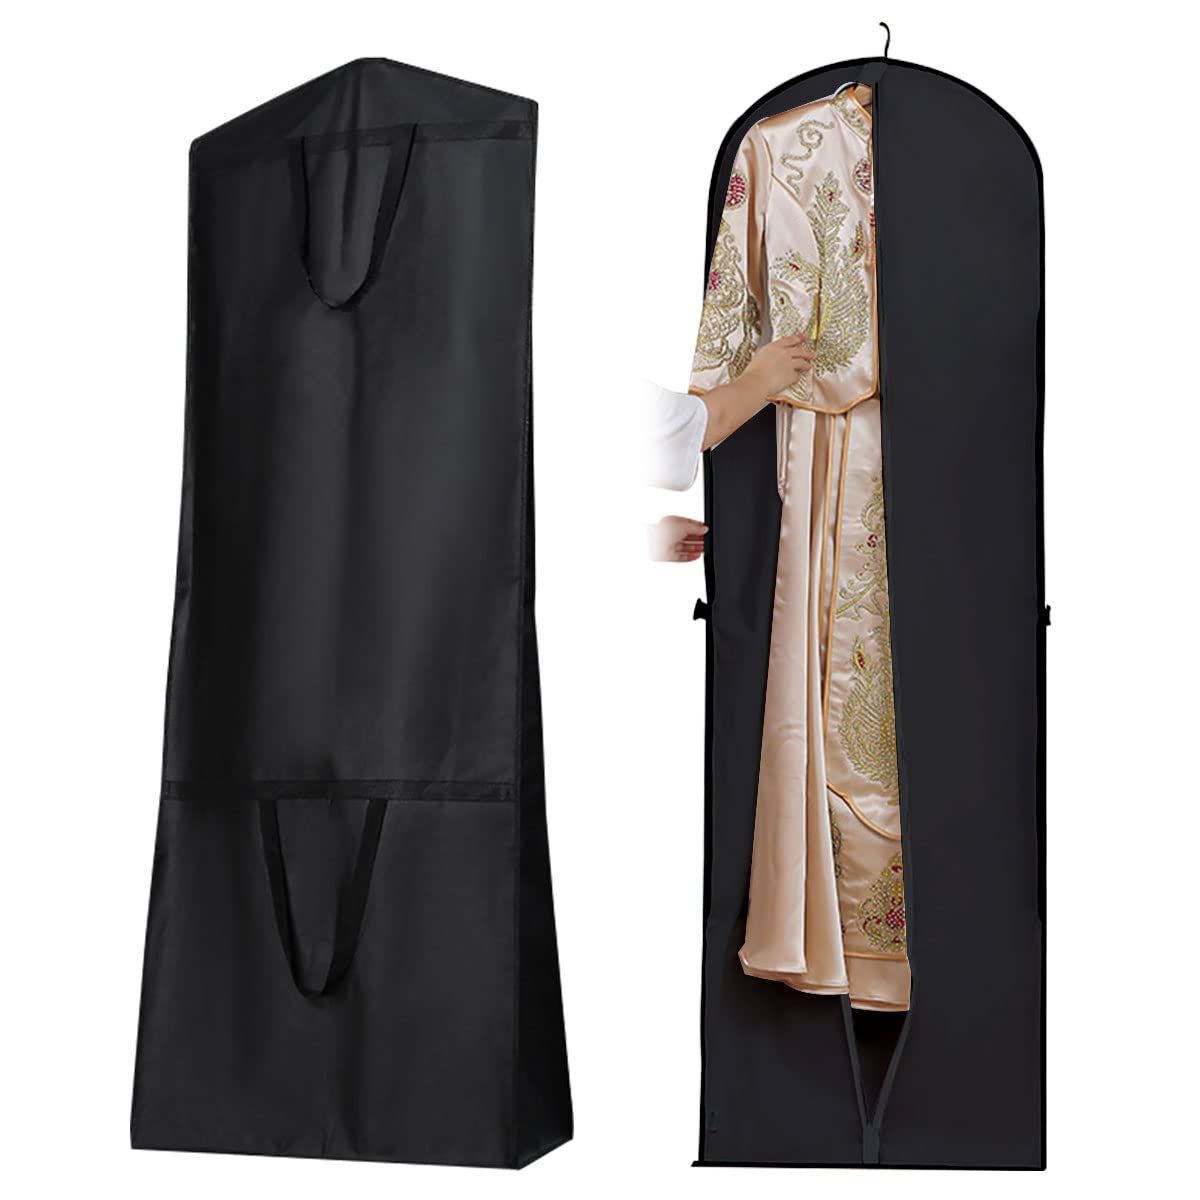 ウェディングドレス用ガーメントバッグ、180cm通気性ウェディングドレスカバーバッグ、ロングドレスガ..